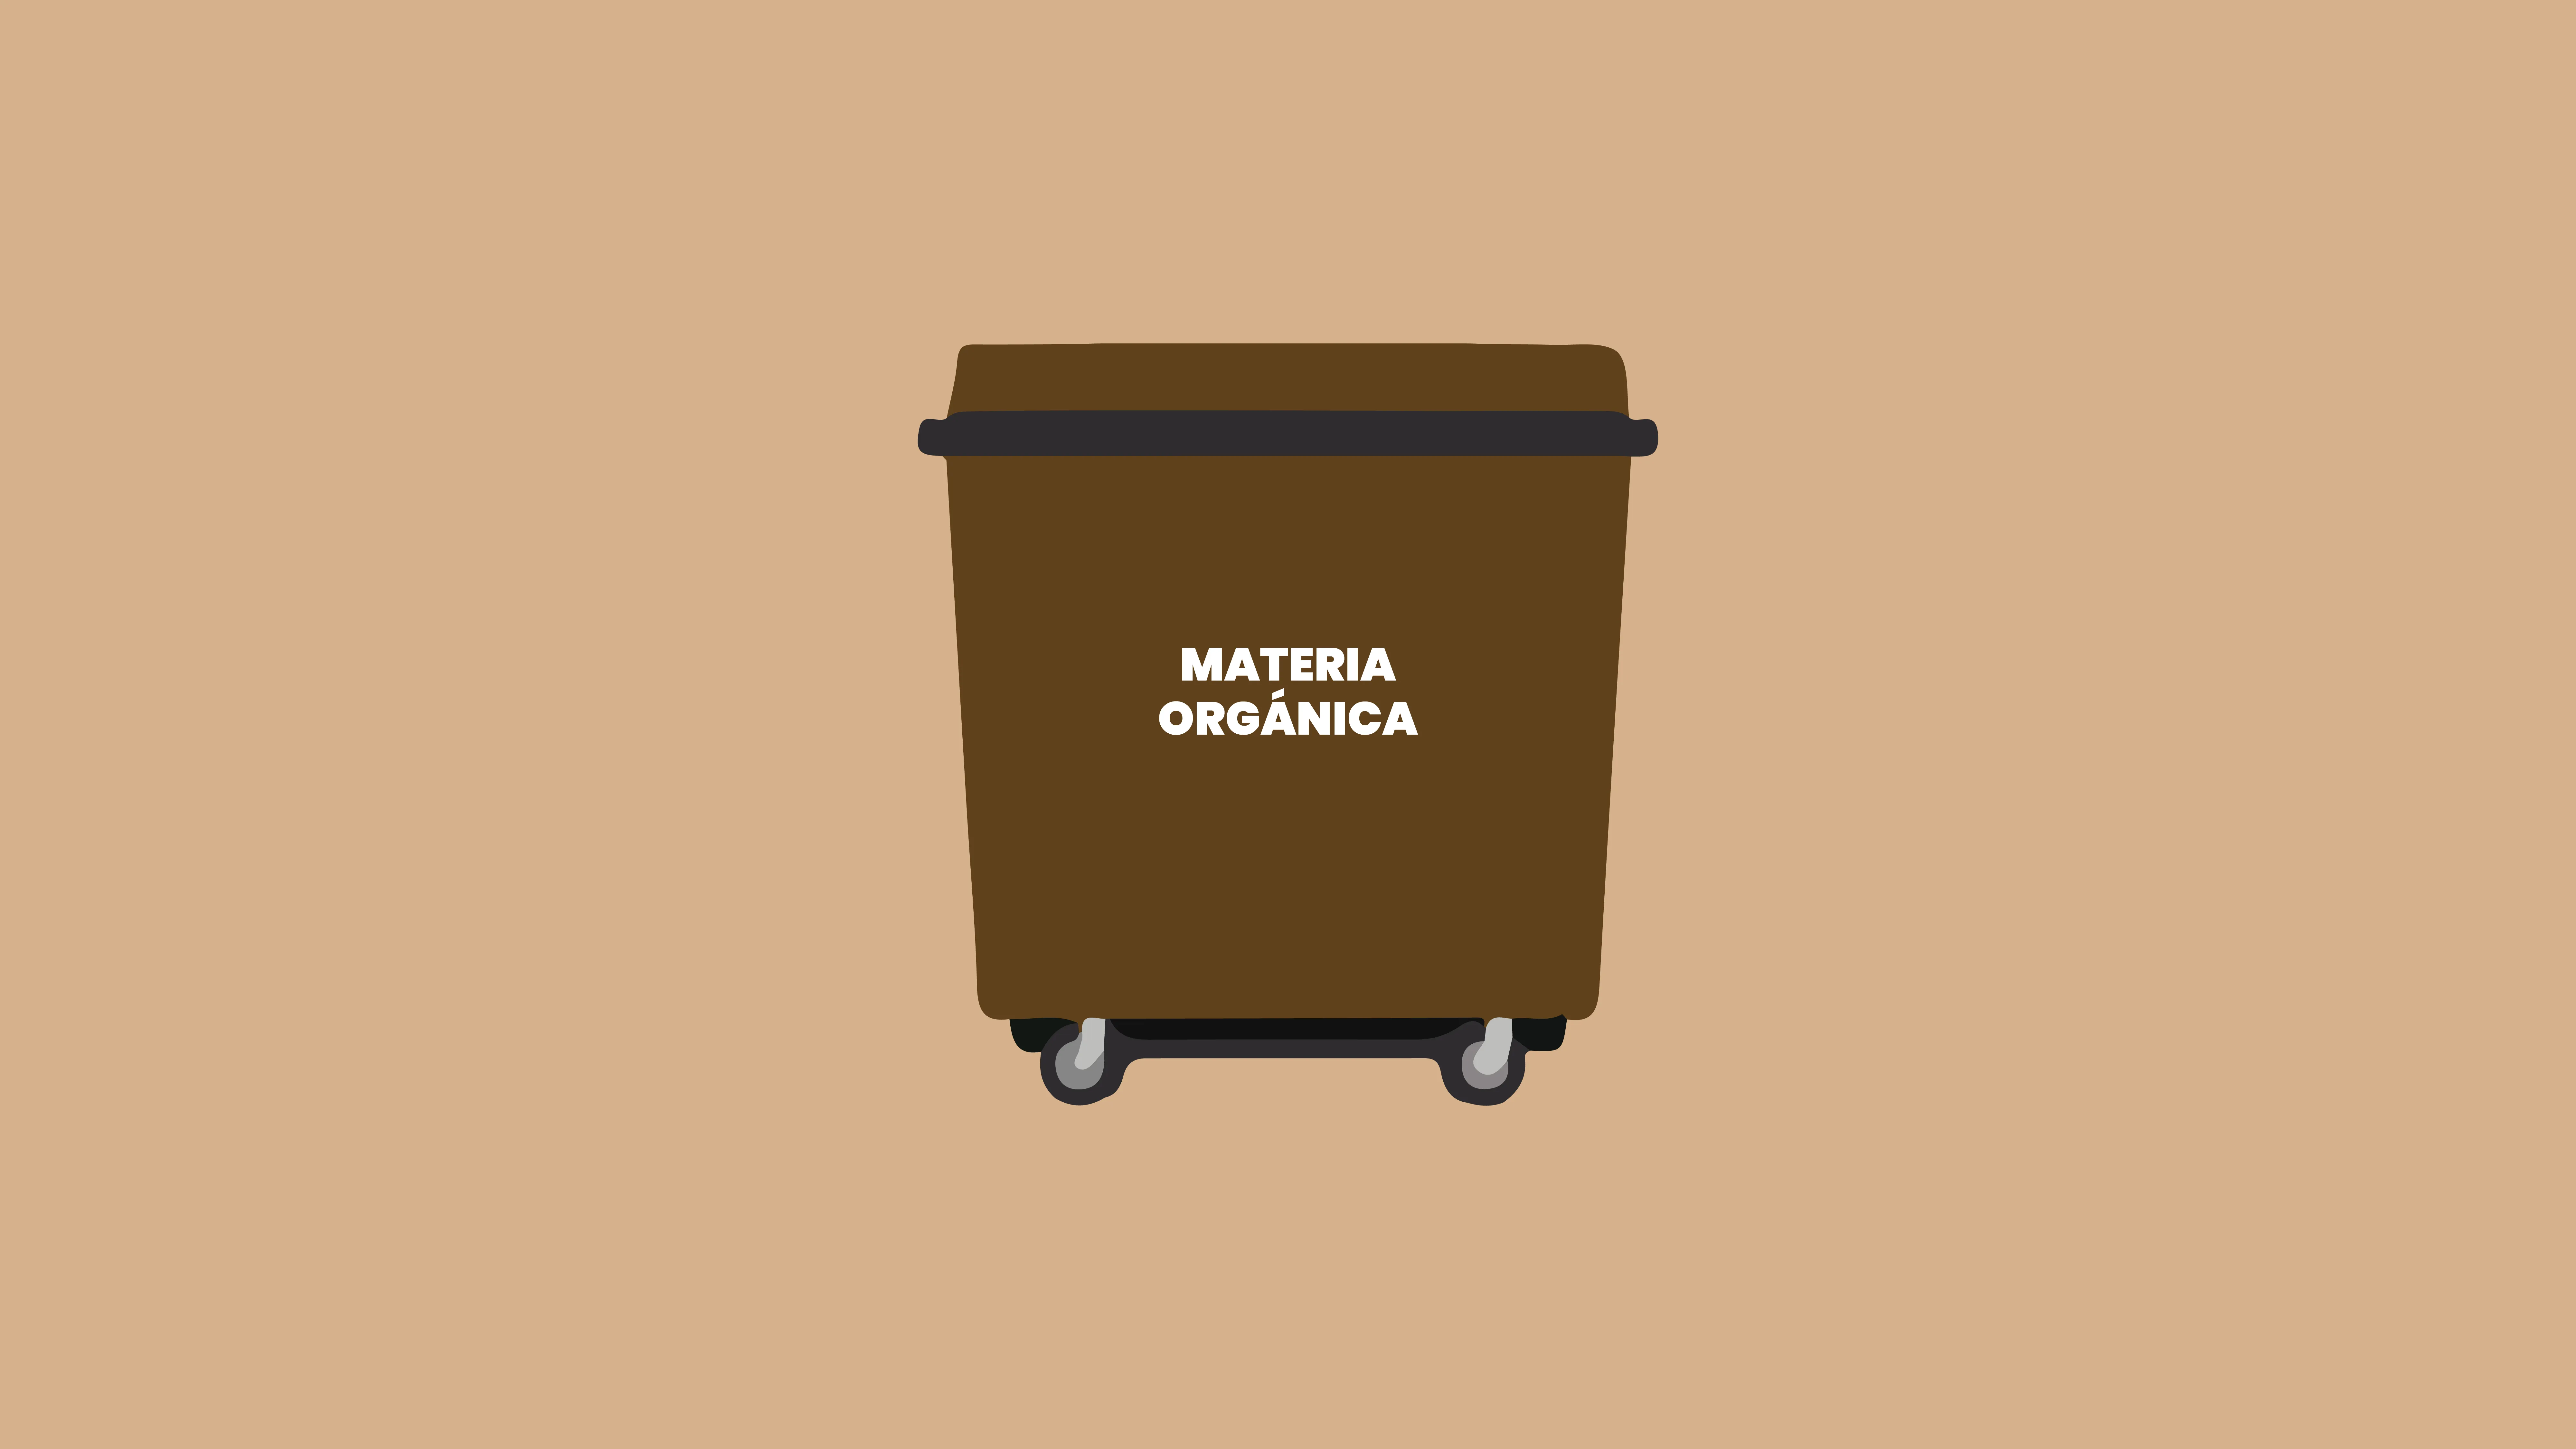 El contenedor marrón: La materia orgánica III